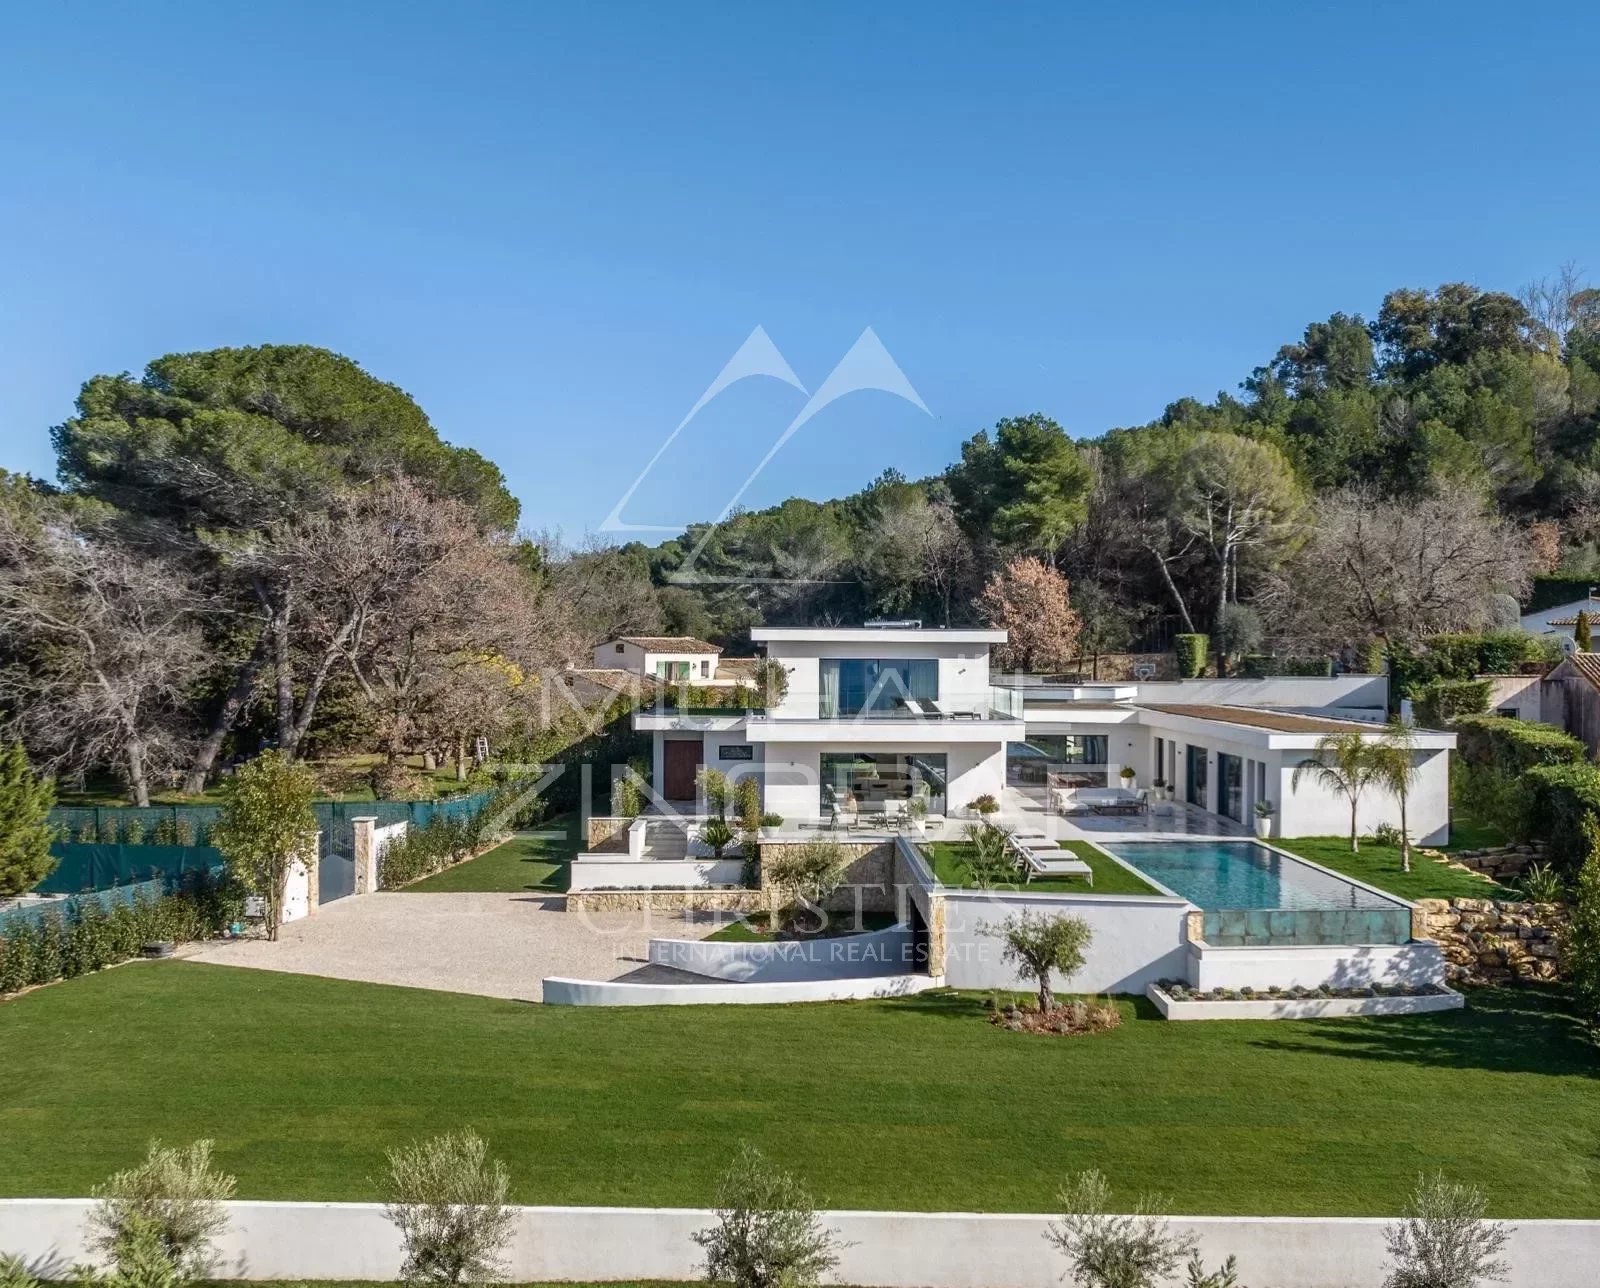 Oberhalb von Cannes - Le Cannet Residential - Außergewöhnliche zeitgenössische Neubauimmobilie